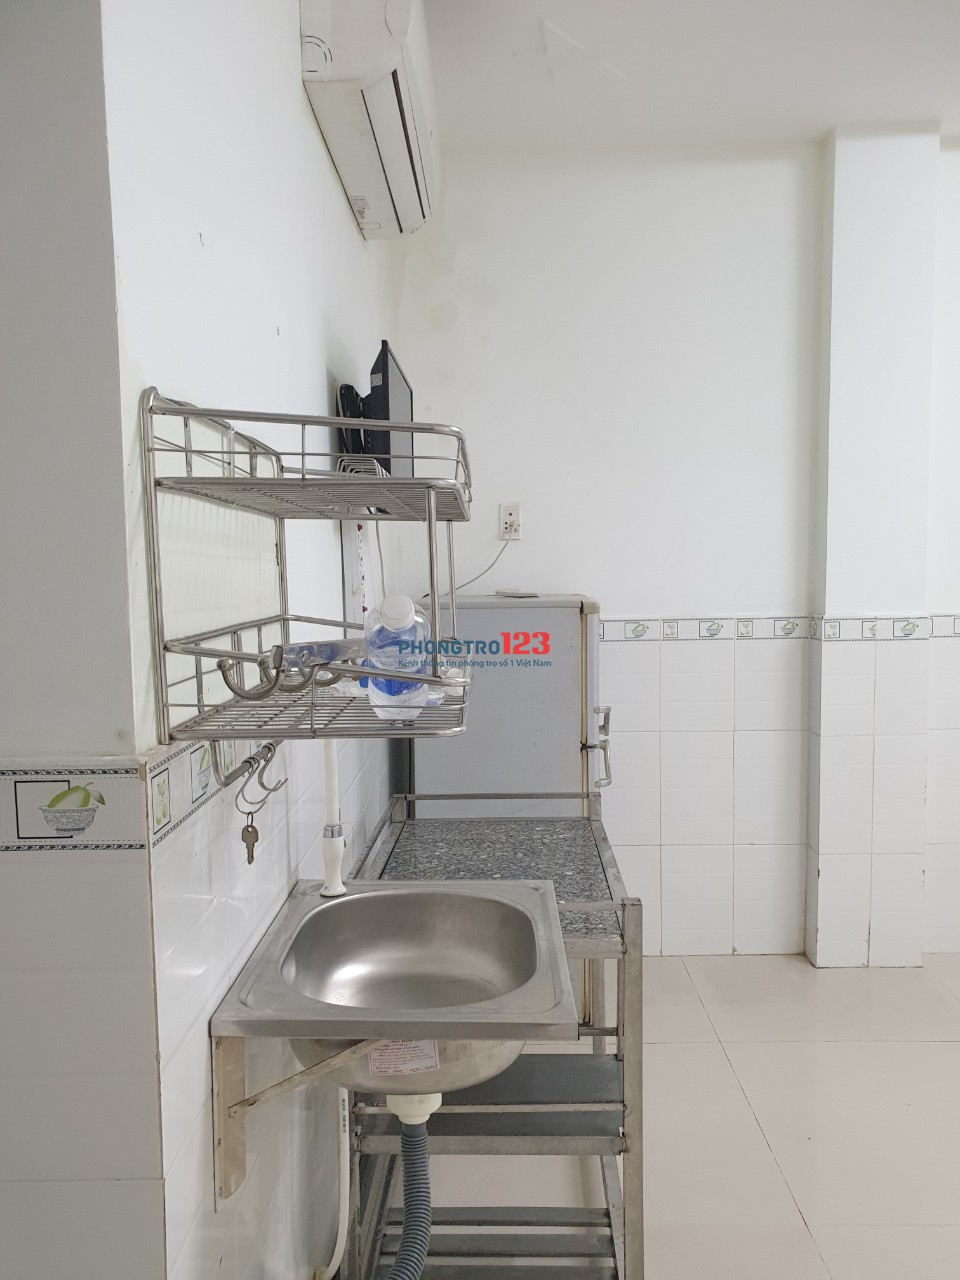 Phòng trọ rộng 25m2 có máy lạnh giá rẻ đường Trường Chinh , P.13 , Quận Tân Bình